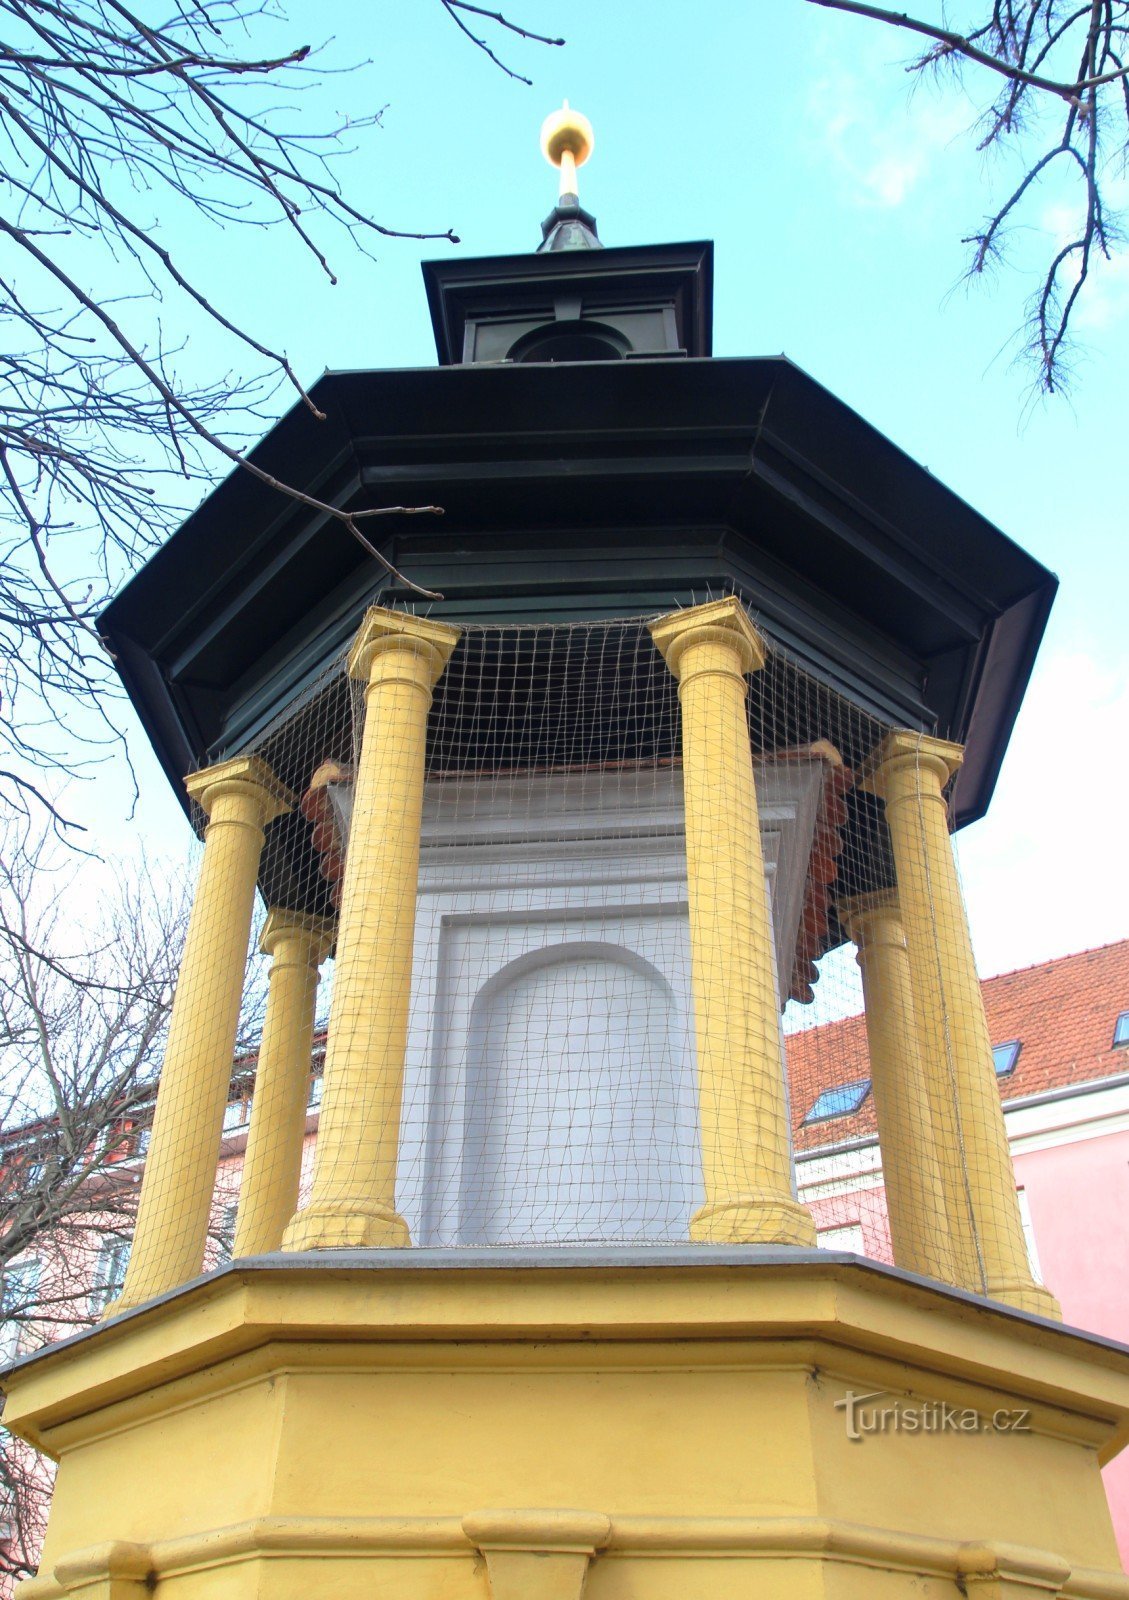 Brno-Štýřice - bell tower on Křídlovická